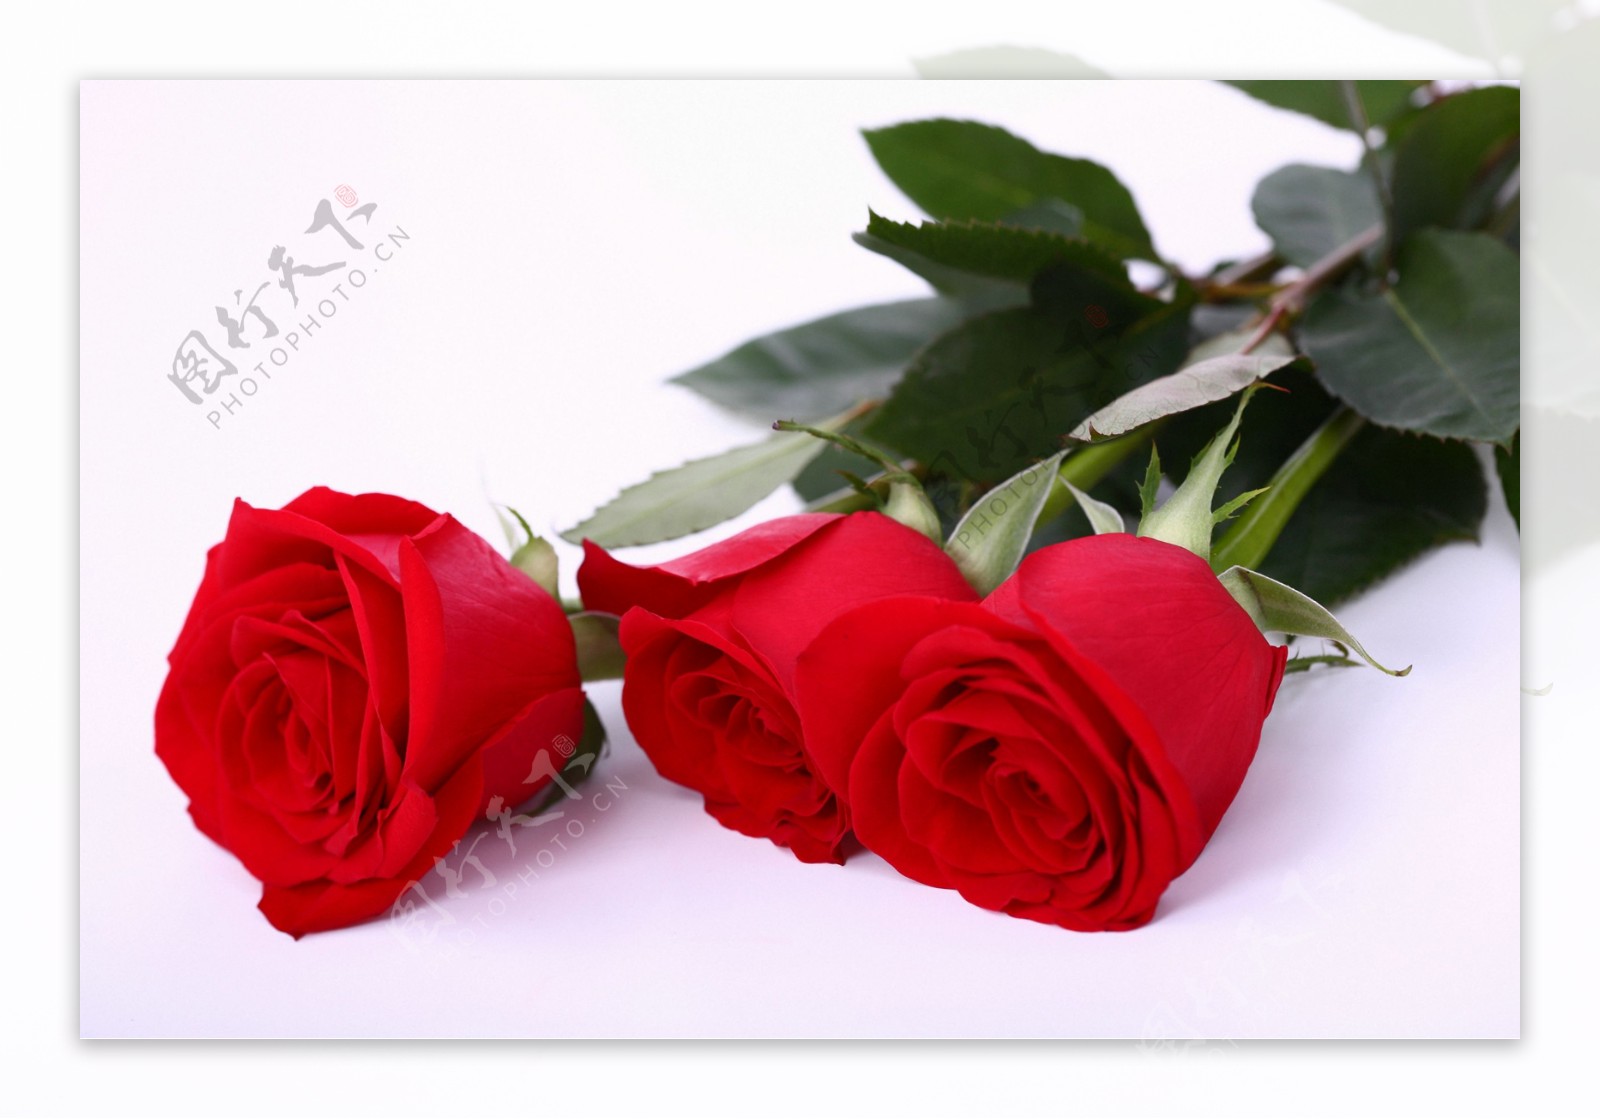 三朵鲜红的玫瑰花